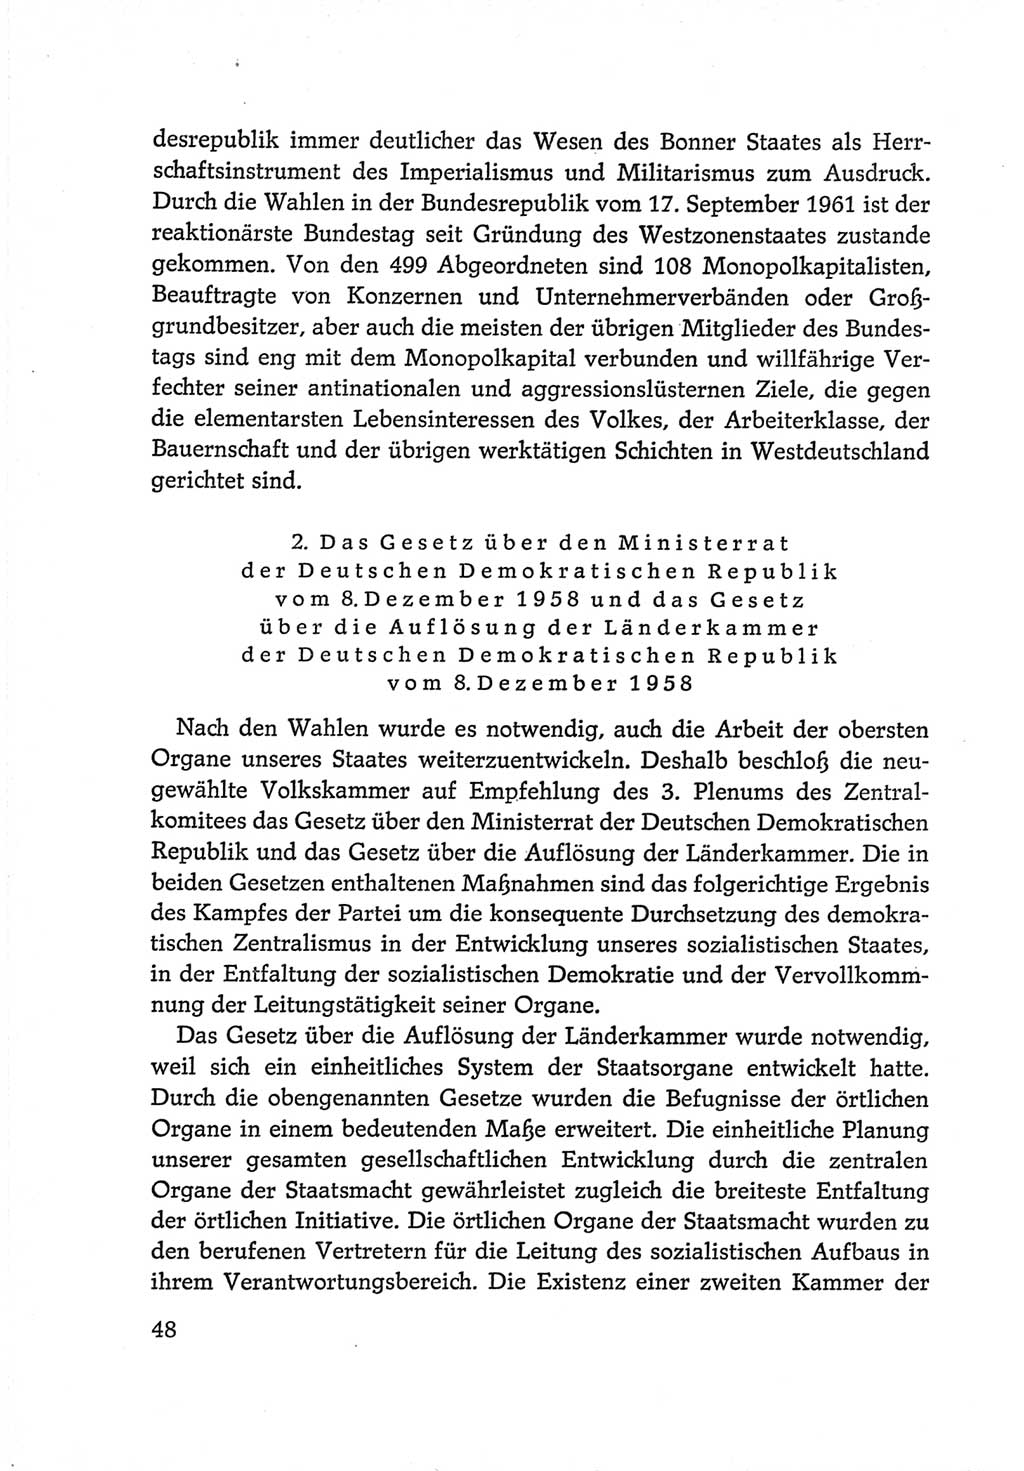 Protokoll der Verhandlungen des Ⅵ. Parteitages der Sozialistischen Einheitspartei Deutschlands (SED) [Deutsche Demokratische Republik (DDR)] 1963, Band Ⅳ, Seite 48 (Prot. Verh. Ⅵ. PT SED DDR 1963, Bd. Ⅳ, S. 48)